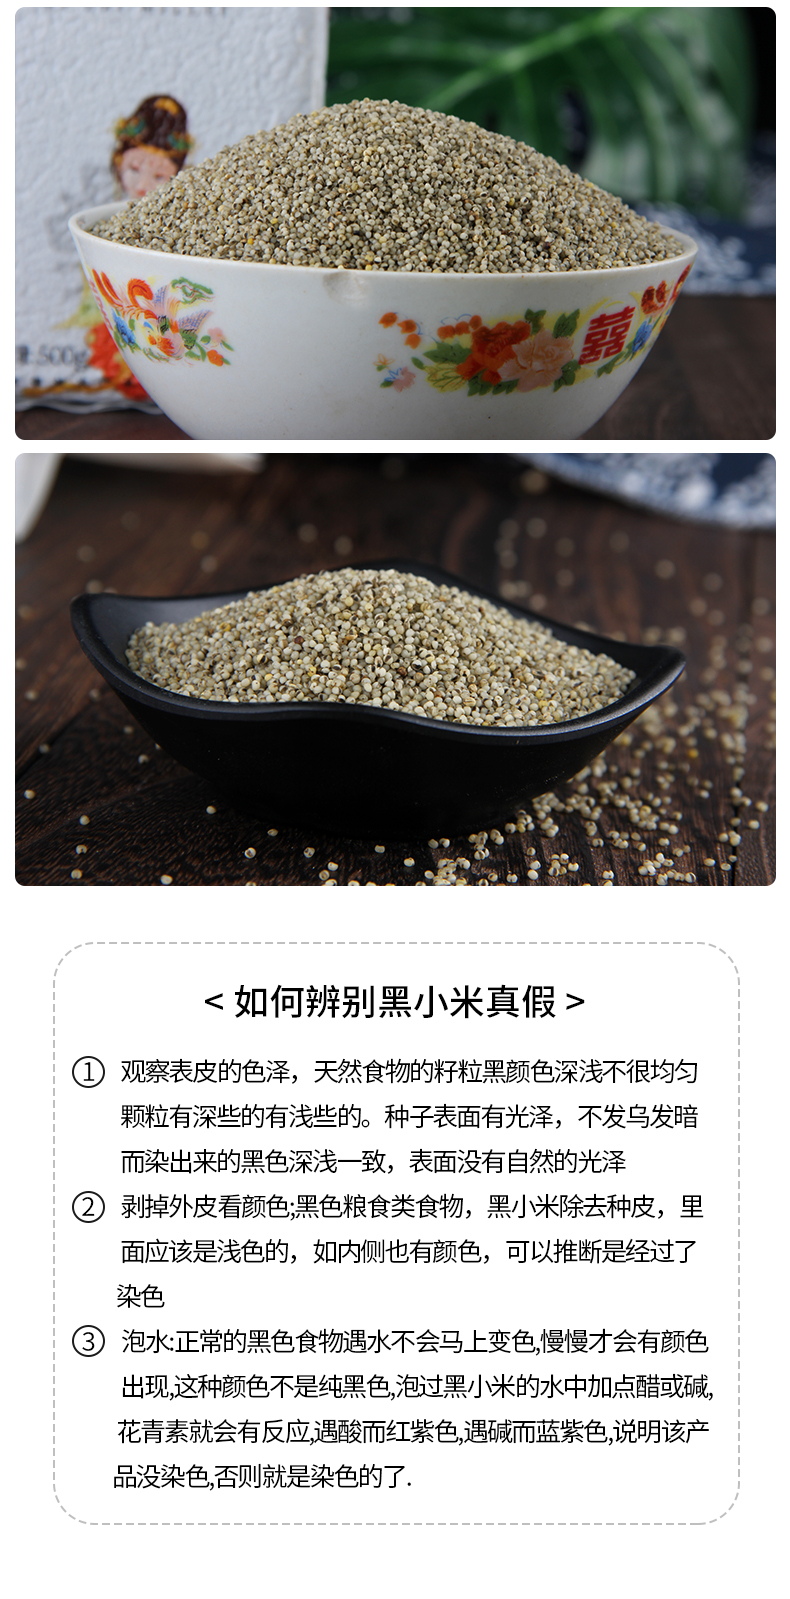 【5折优惠】米脂黑小米两袋装2020年新米陕北农家小米粥杂粮搭配500g*2